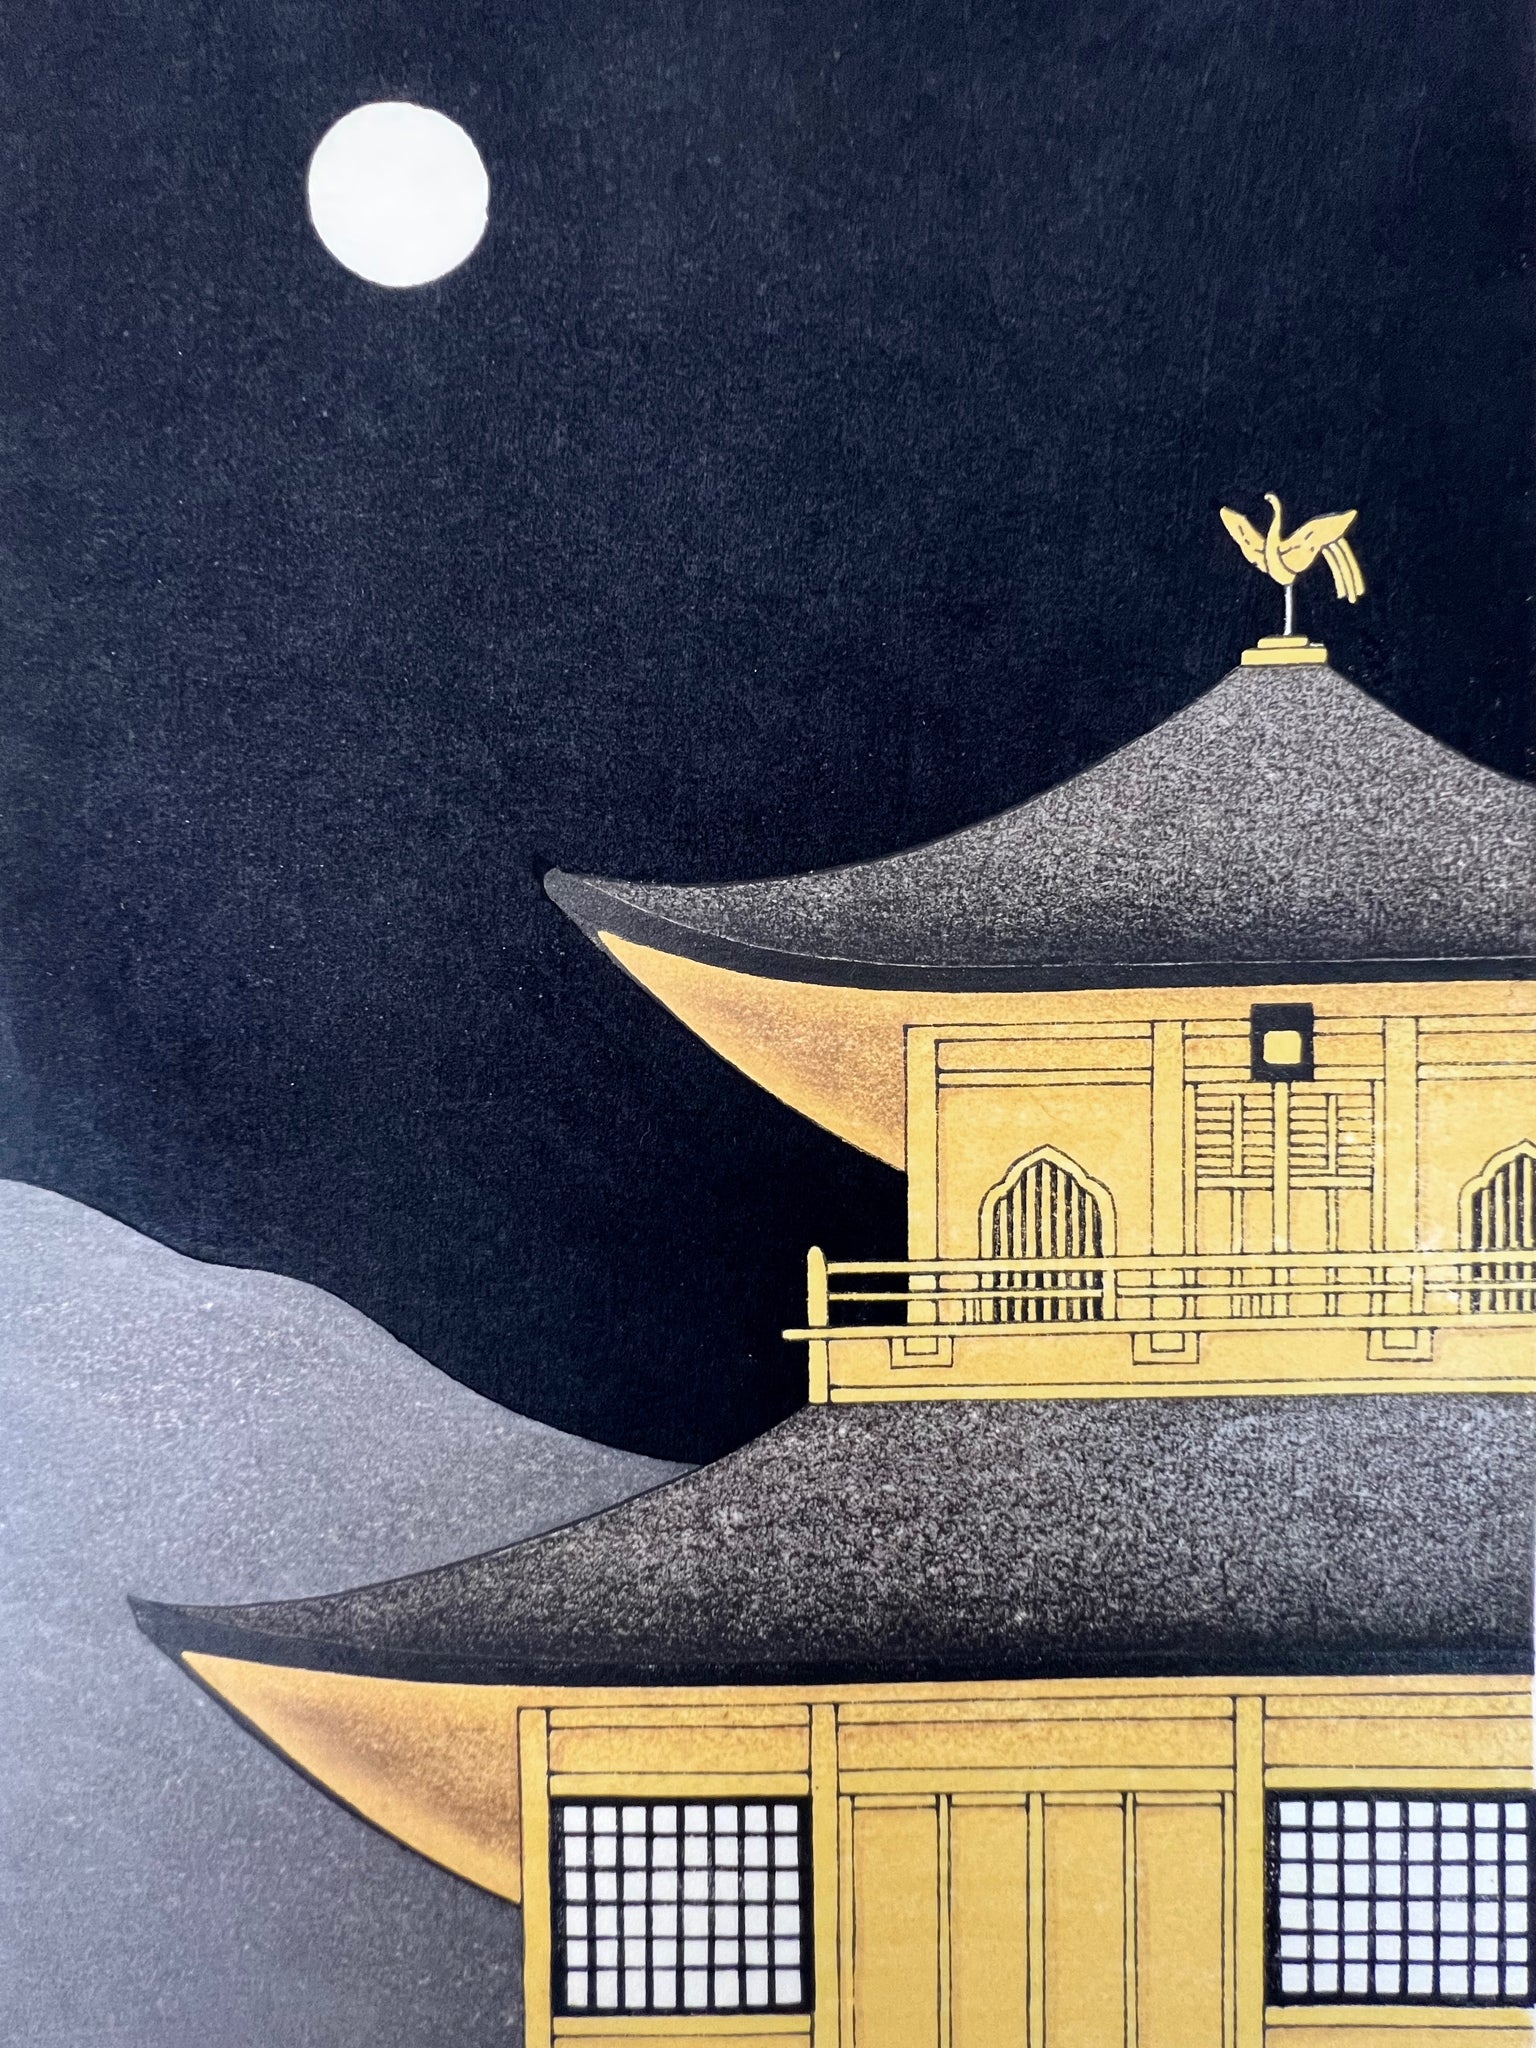 estampe japonaise contemporaine pavillon d'or kinkakuji nuit de pleine lune, haut du pavillon or dans la nuit noire